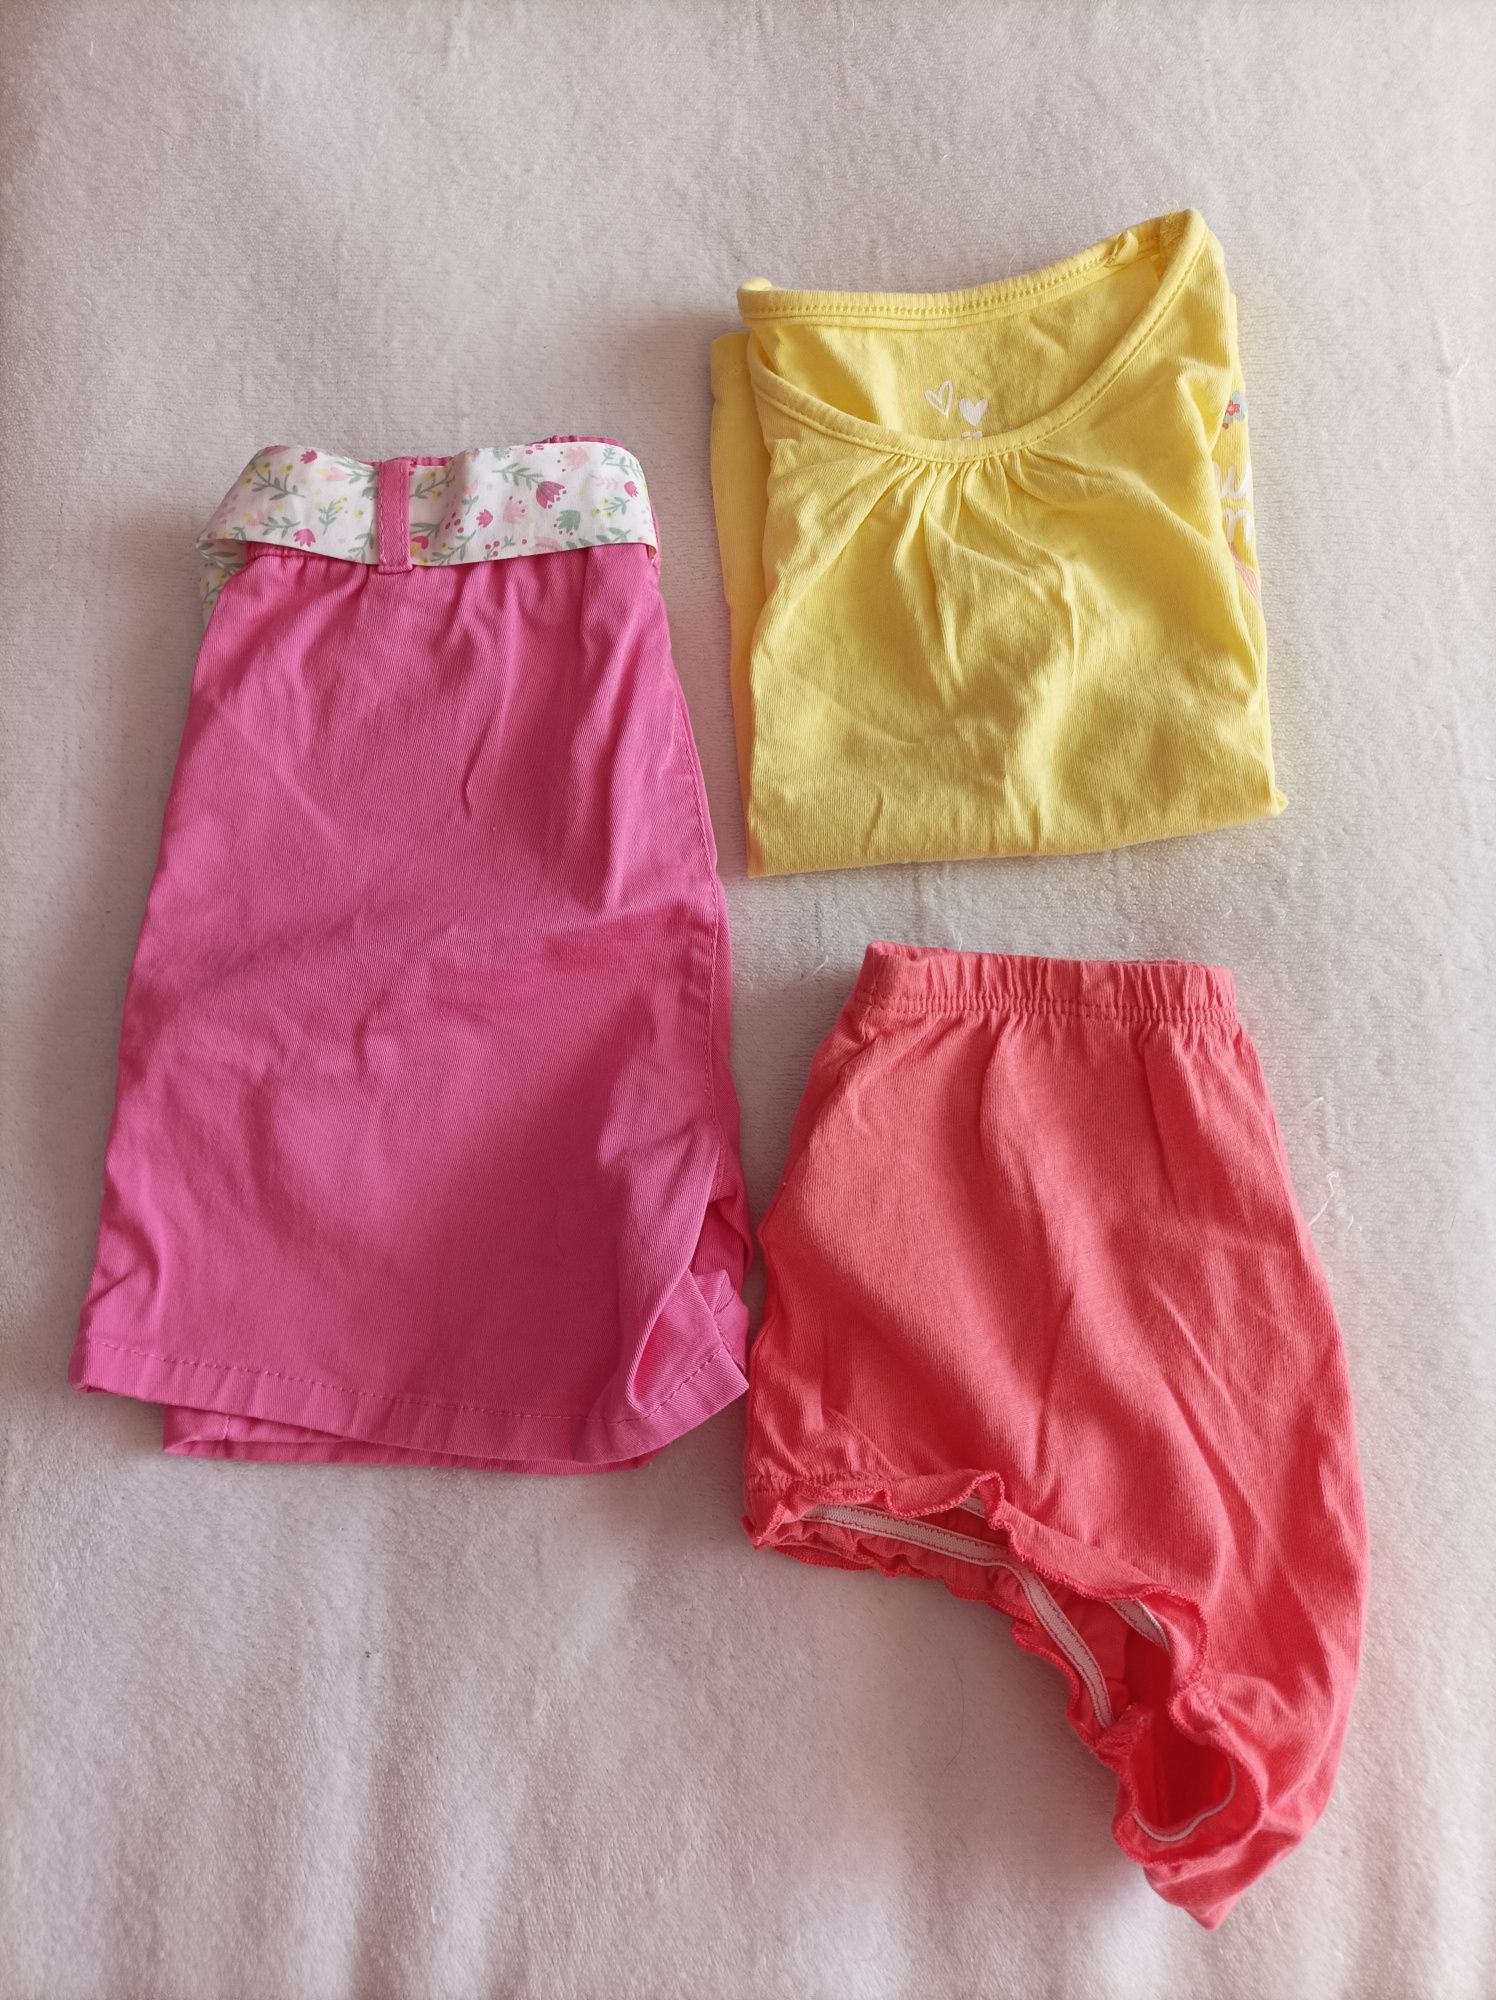 Zestaw ubranie komplet spodenki dla dziewczynki dziewczynka 86 92